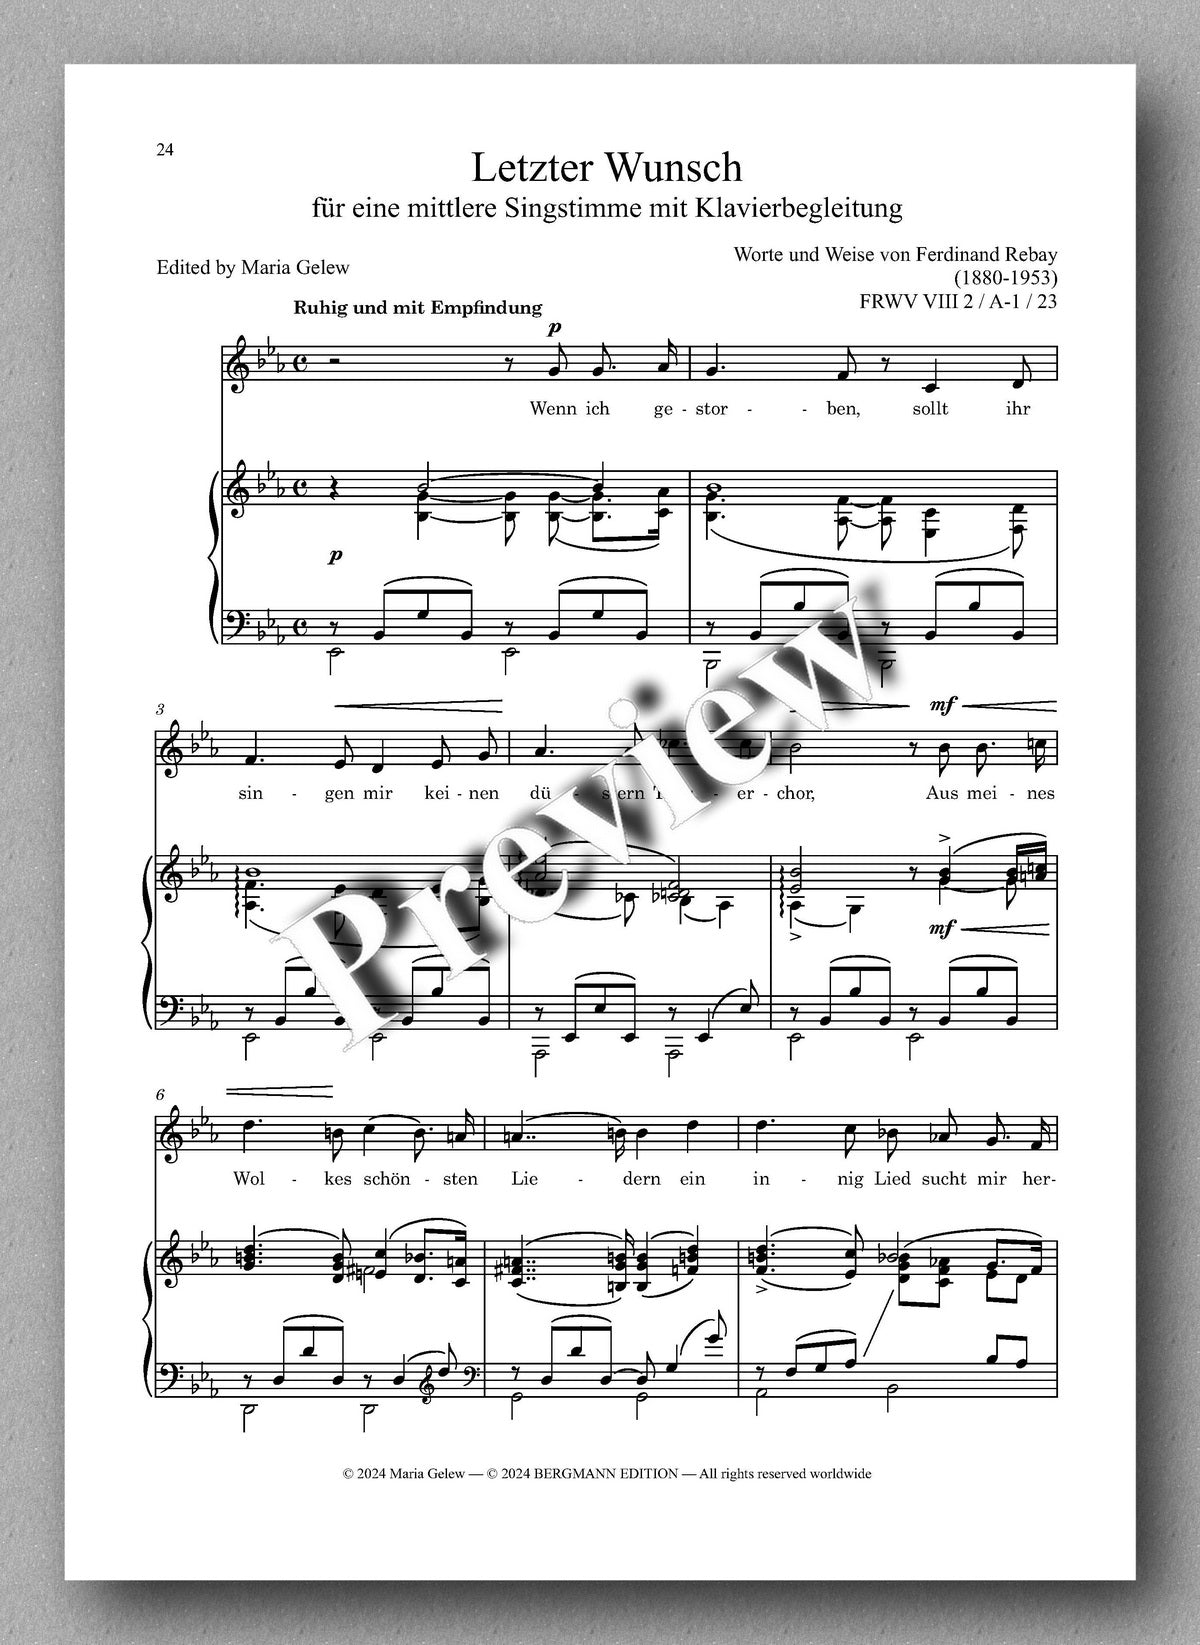 Rebay, Lieder No. 17, Lieder nach eigenen Texten - preview of the music score 4